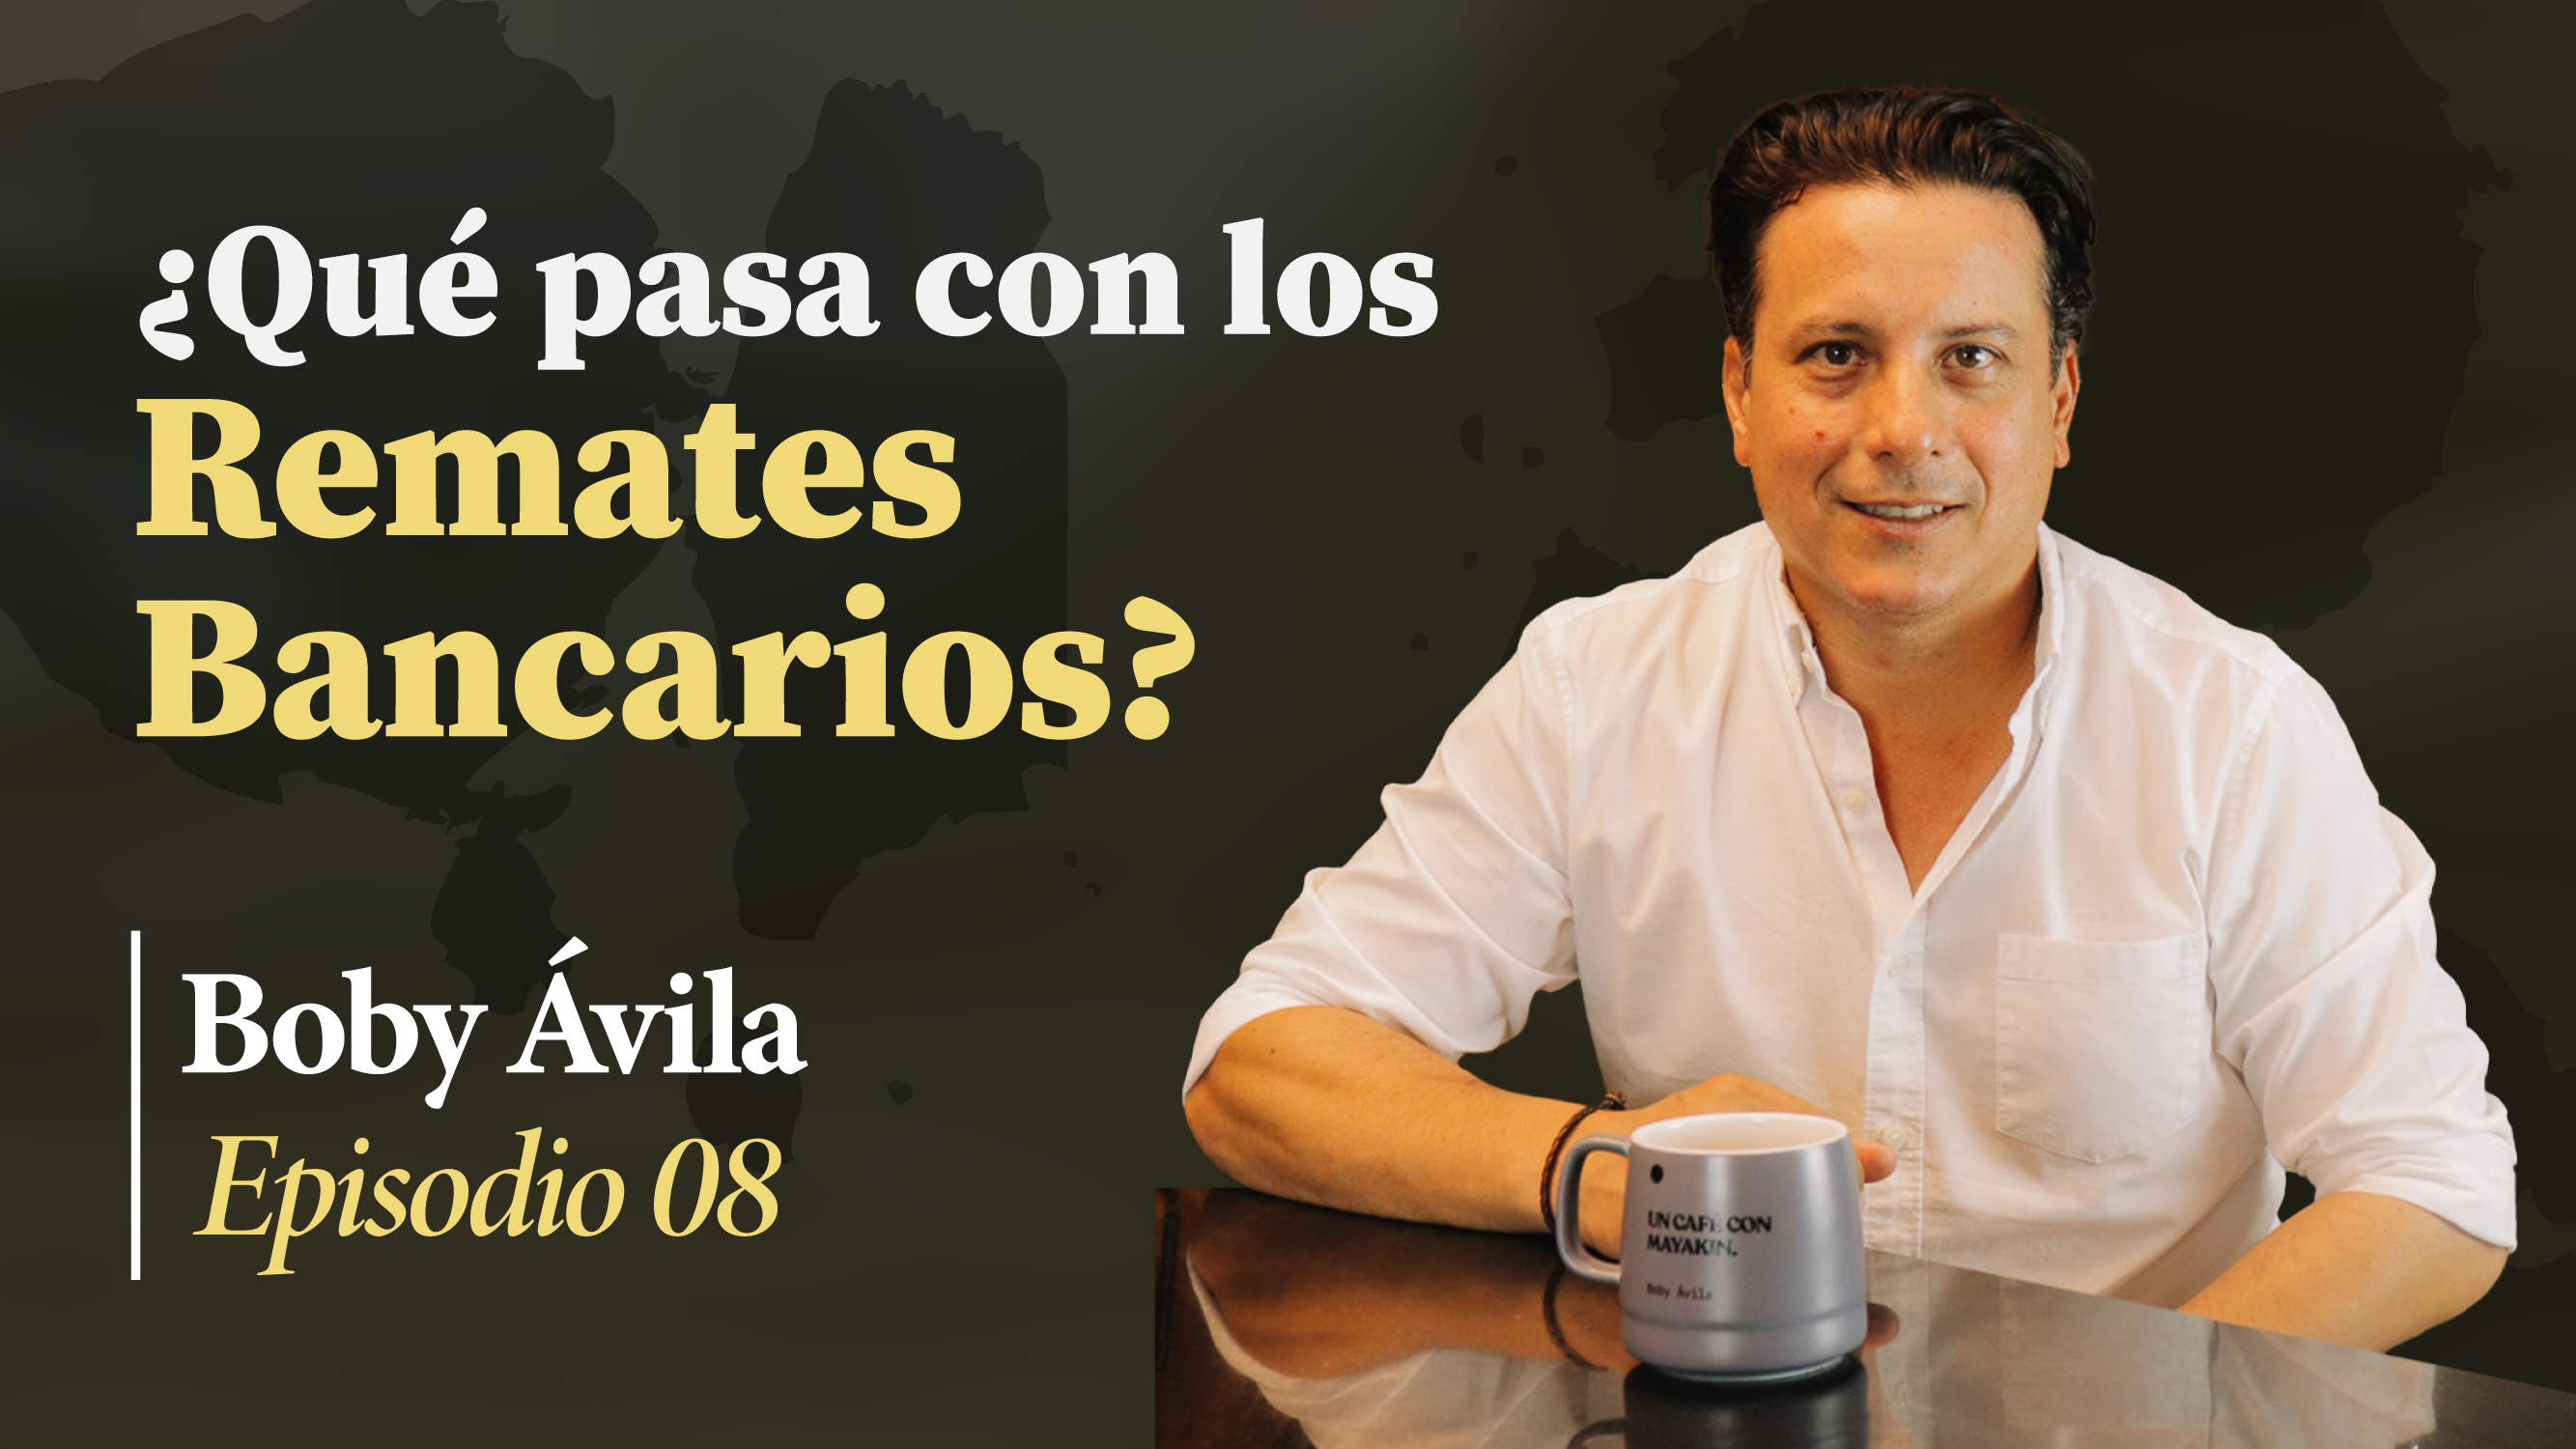 ¿Qué pasa con los remates bancarios inmobiliarios? | Un Café con Mayakin (Ep:08) Boby Ávila